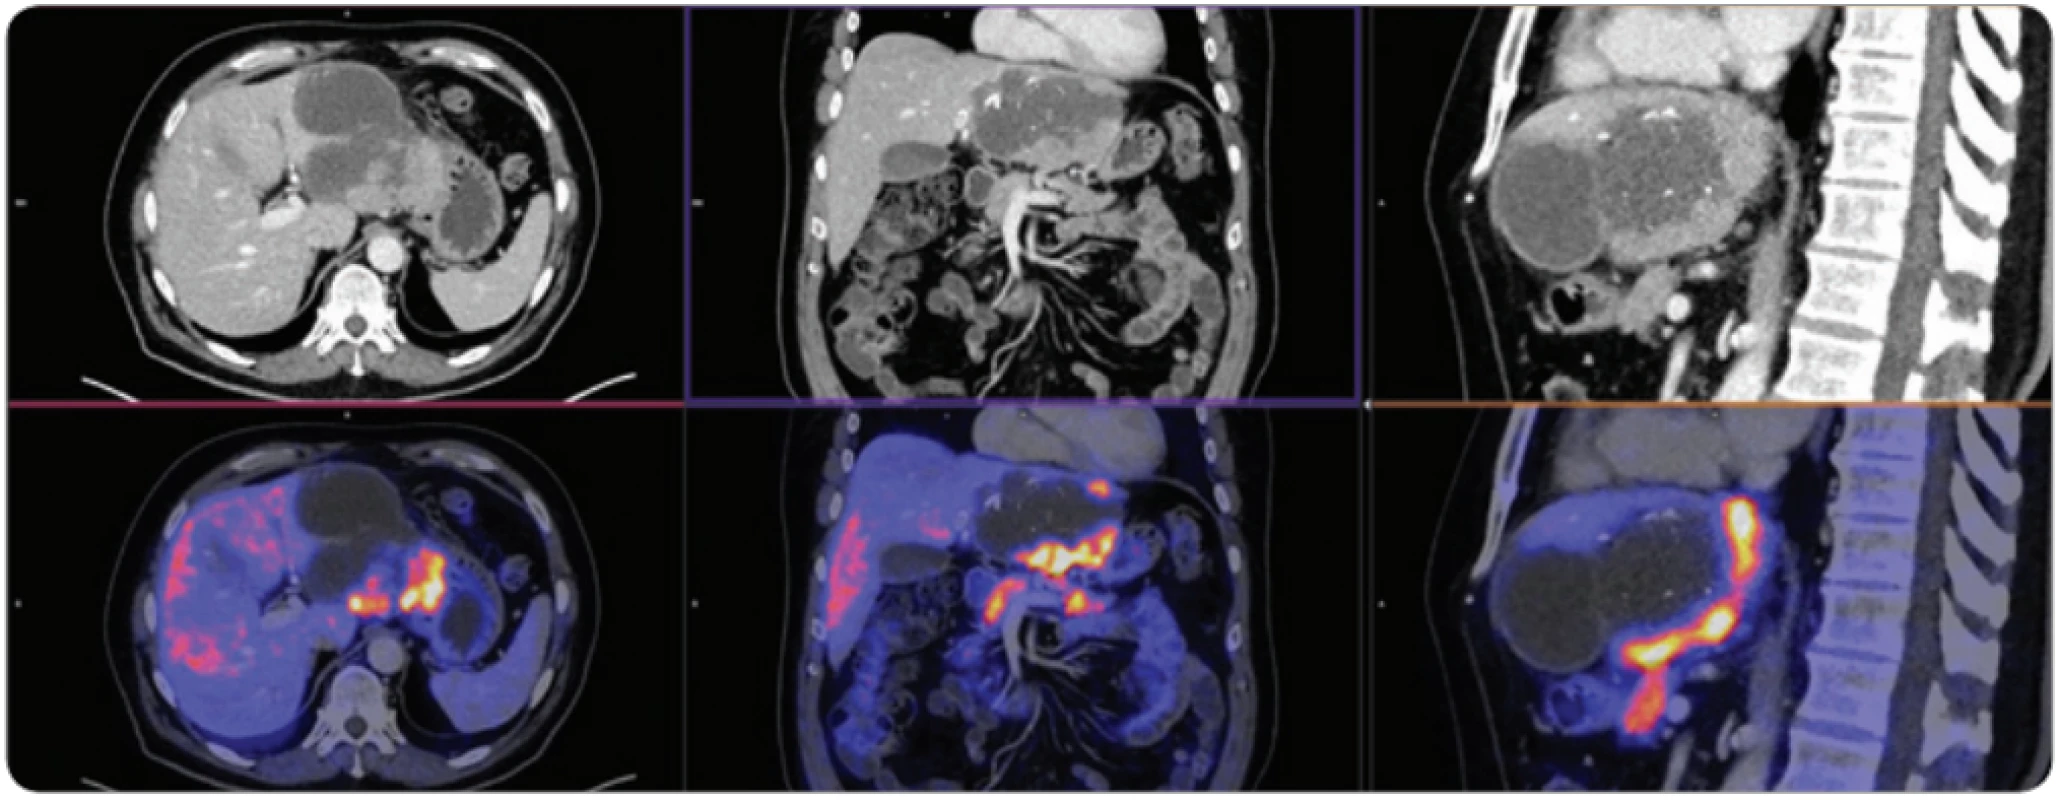 Vyšetření PET/CT s podáním 18F-fl uorodeoxyglukózy u dobře diferencovaného karcinomu, vyšetření PET/CT po chemoembolizaci ukazuje, že část hepatocelulárního karcinomu nekrotizovala, ale část nádorové tkáně po obvodu je viabilní.